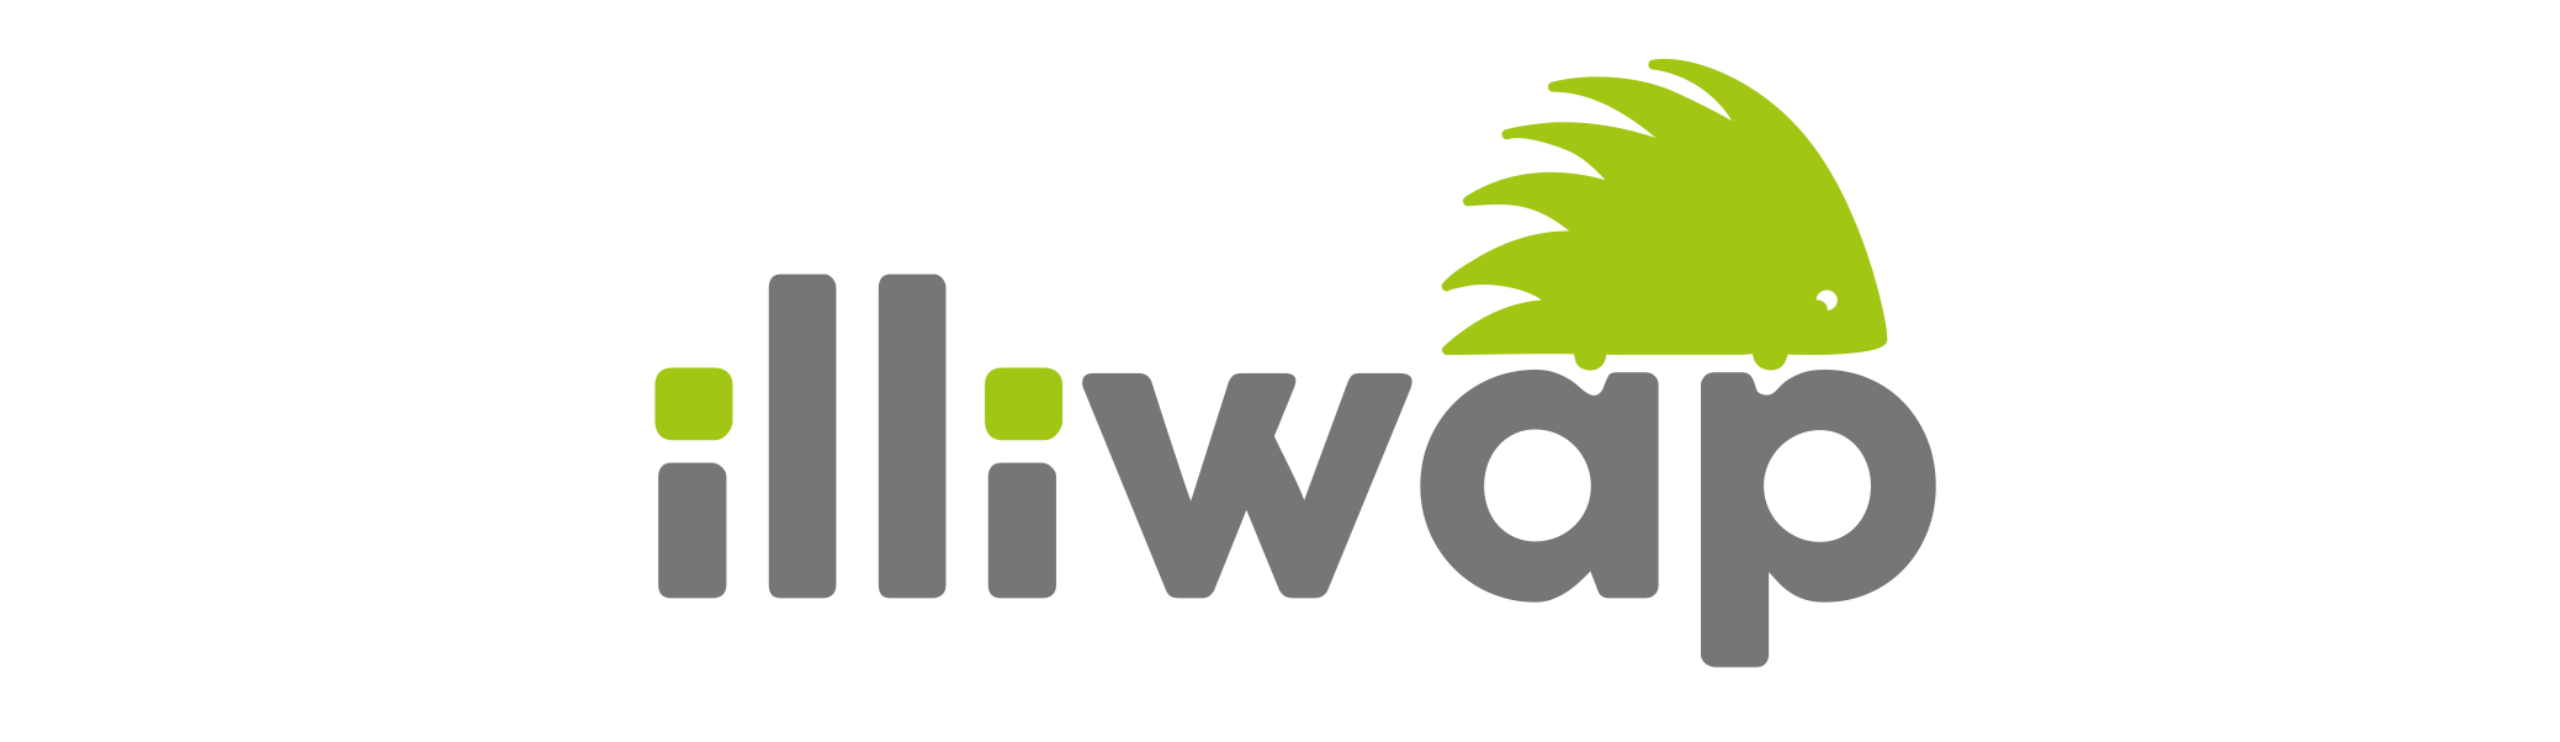 Illiwap logo Thinkz partner IoT